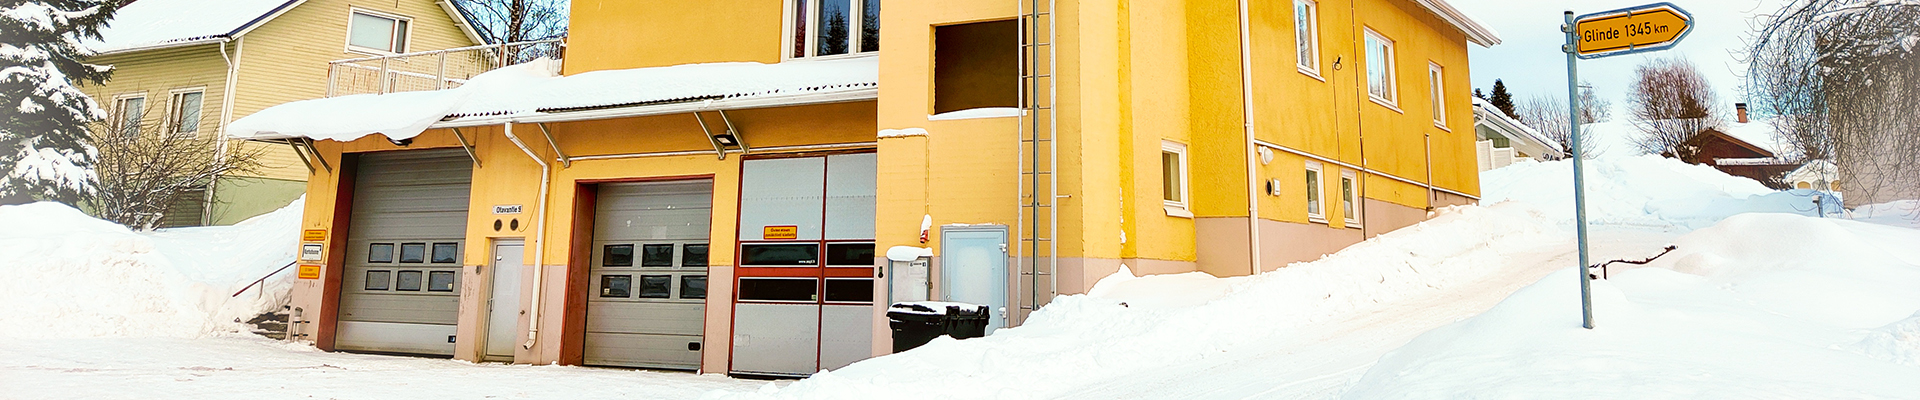 Otavan keltaiseksi maalattu paloasema sijaitsee rinteessä. Etualalla kalustohallin puoli isoine ovineen.